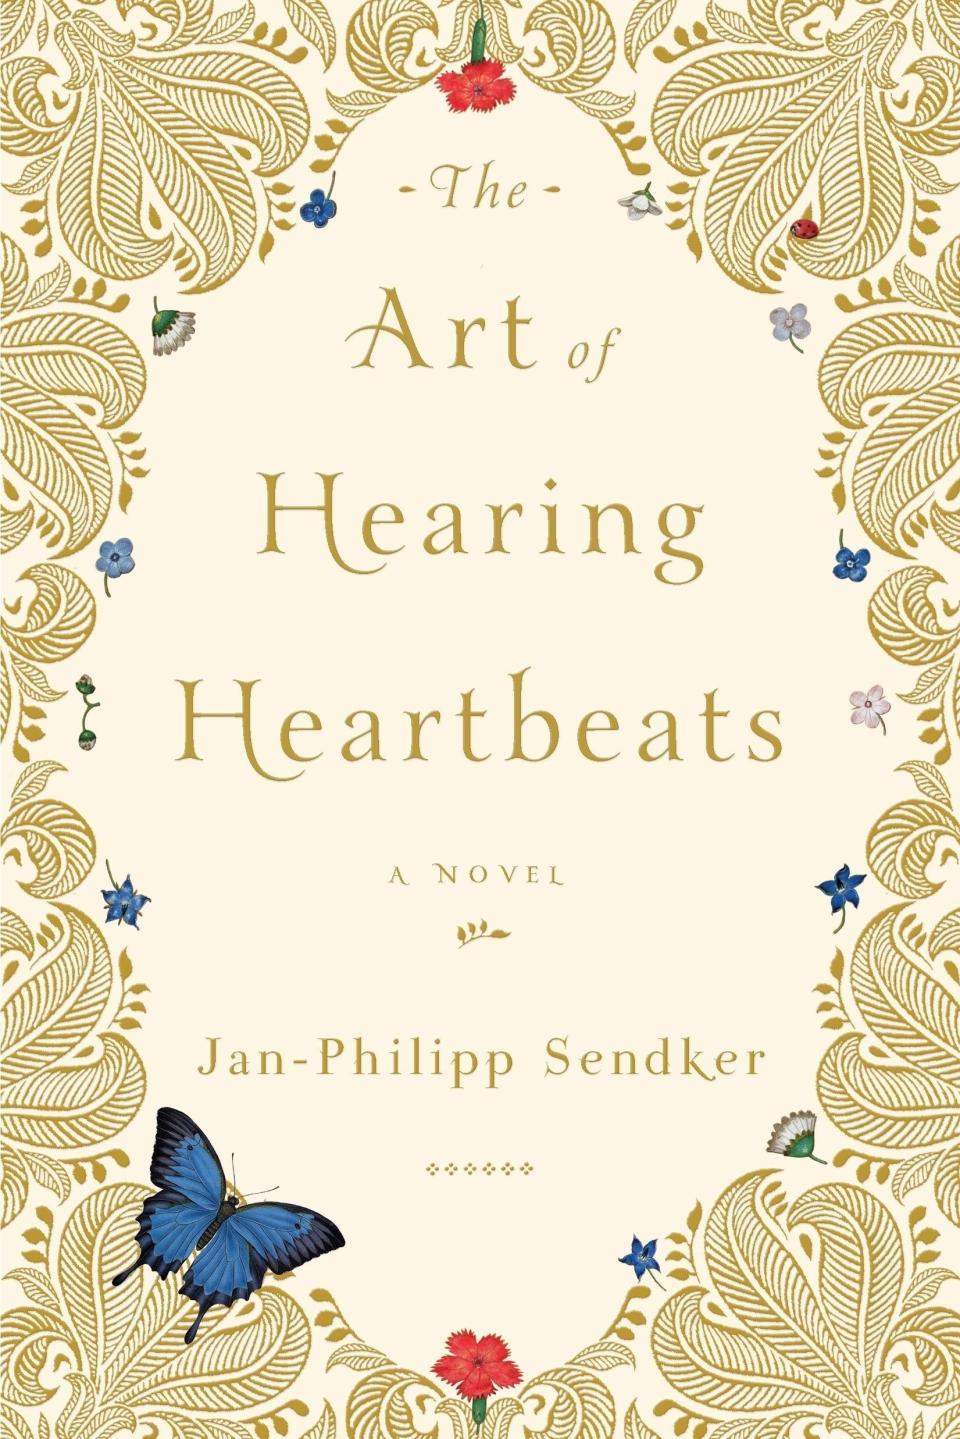 "The Art of Hearing Heartbeats" by Jan-Philipp Sendker.